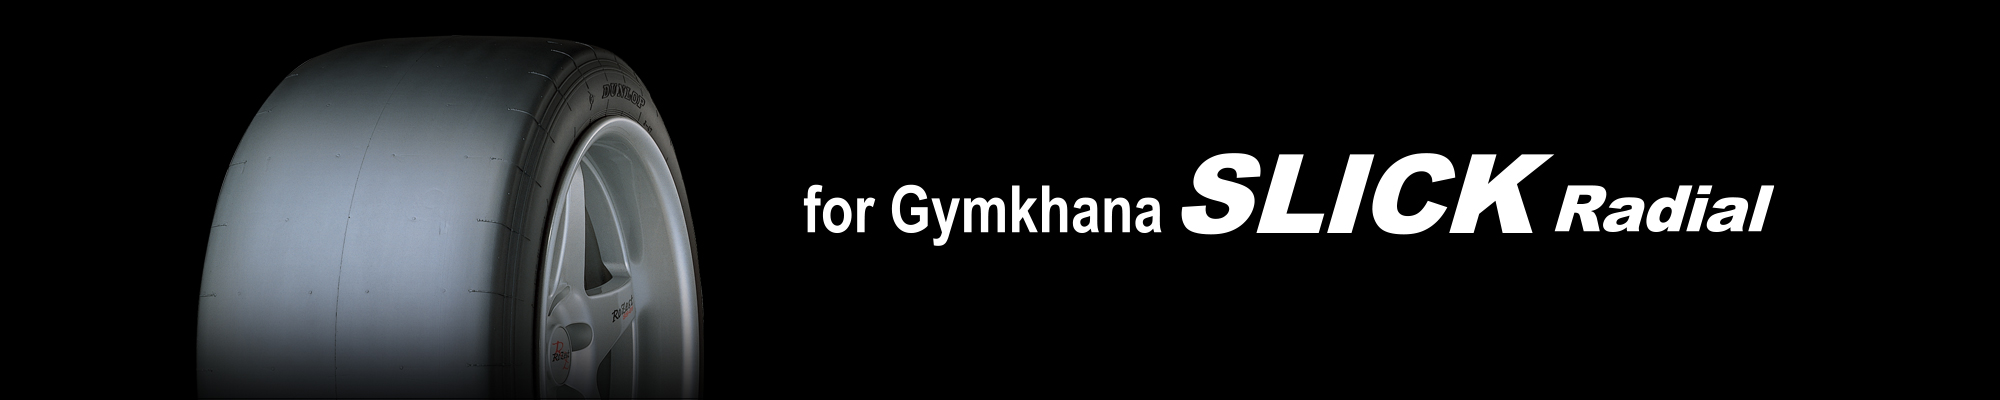 for Gymkhana SLICK Radial